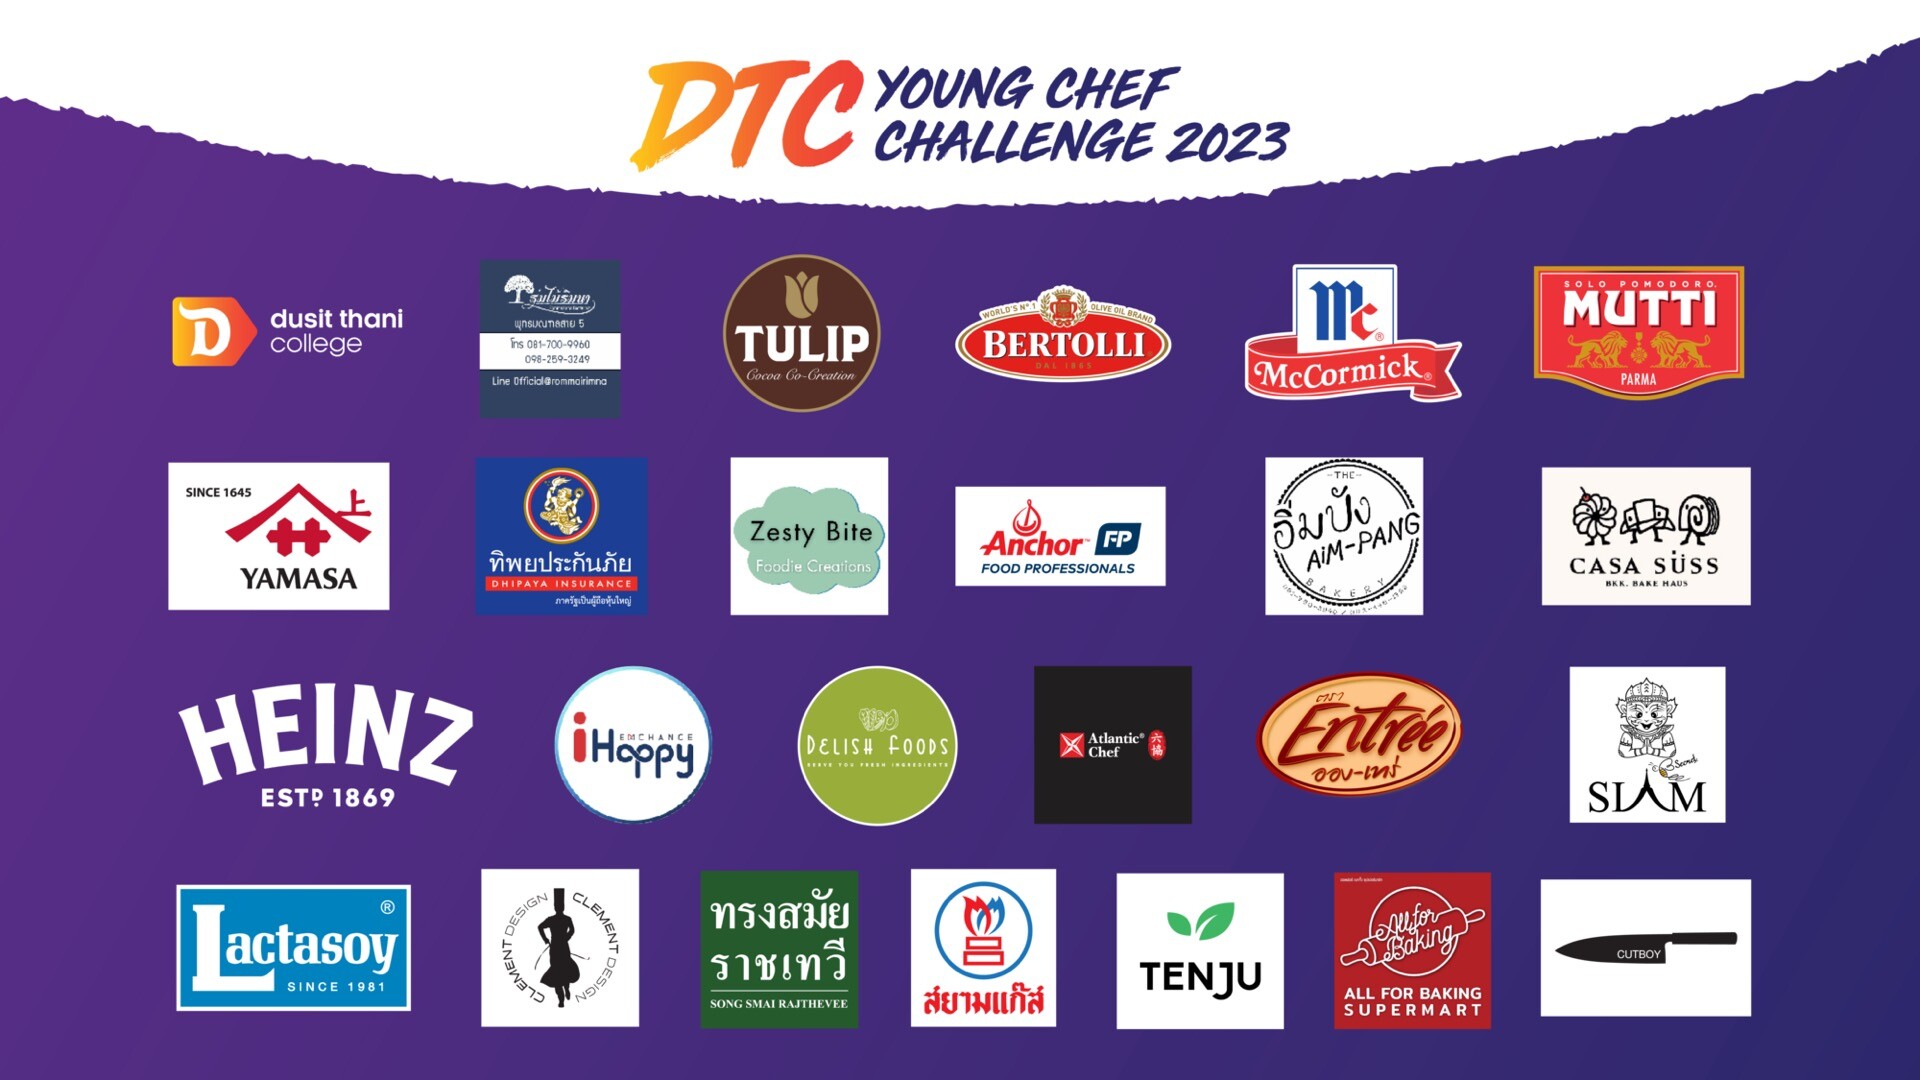 "ดวลสกิลชิงแชมป์ในสายบริการ" วิทยาลัยดุสิตธานี เปิดสนามรบ 12 โรงเรียน ชิงชัยที่หนึ่งด้าน Hospitality กับงาน DTC Young Chef Challenge